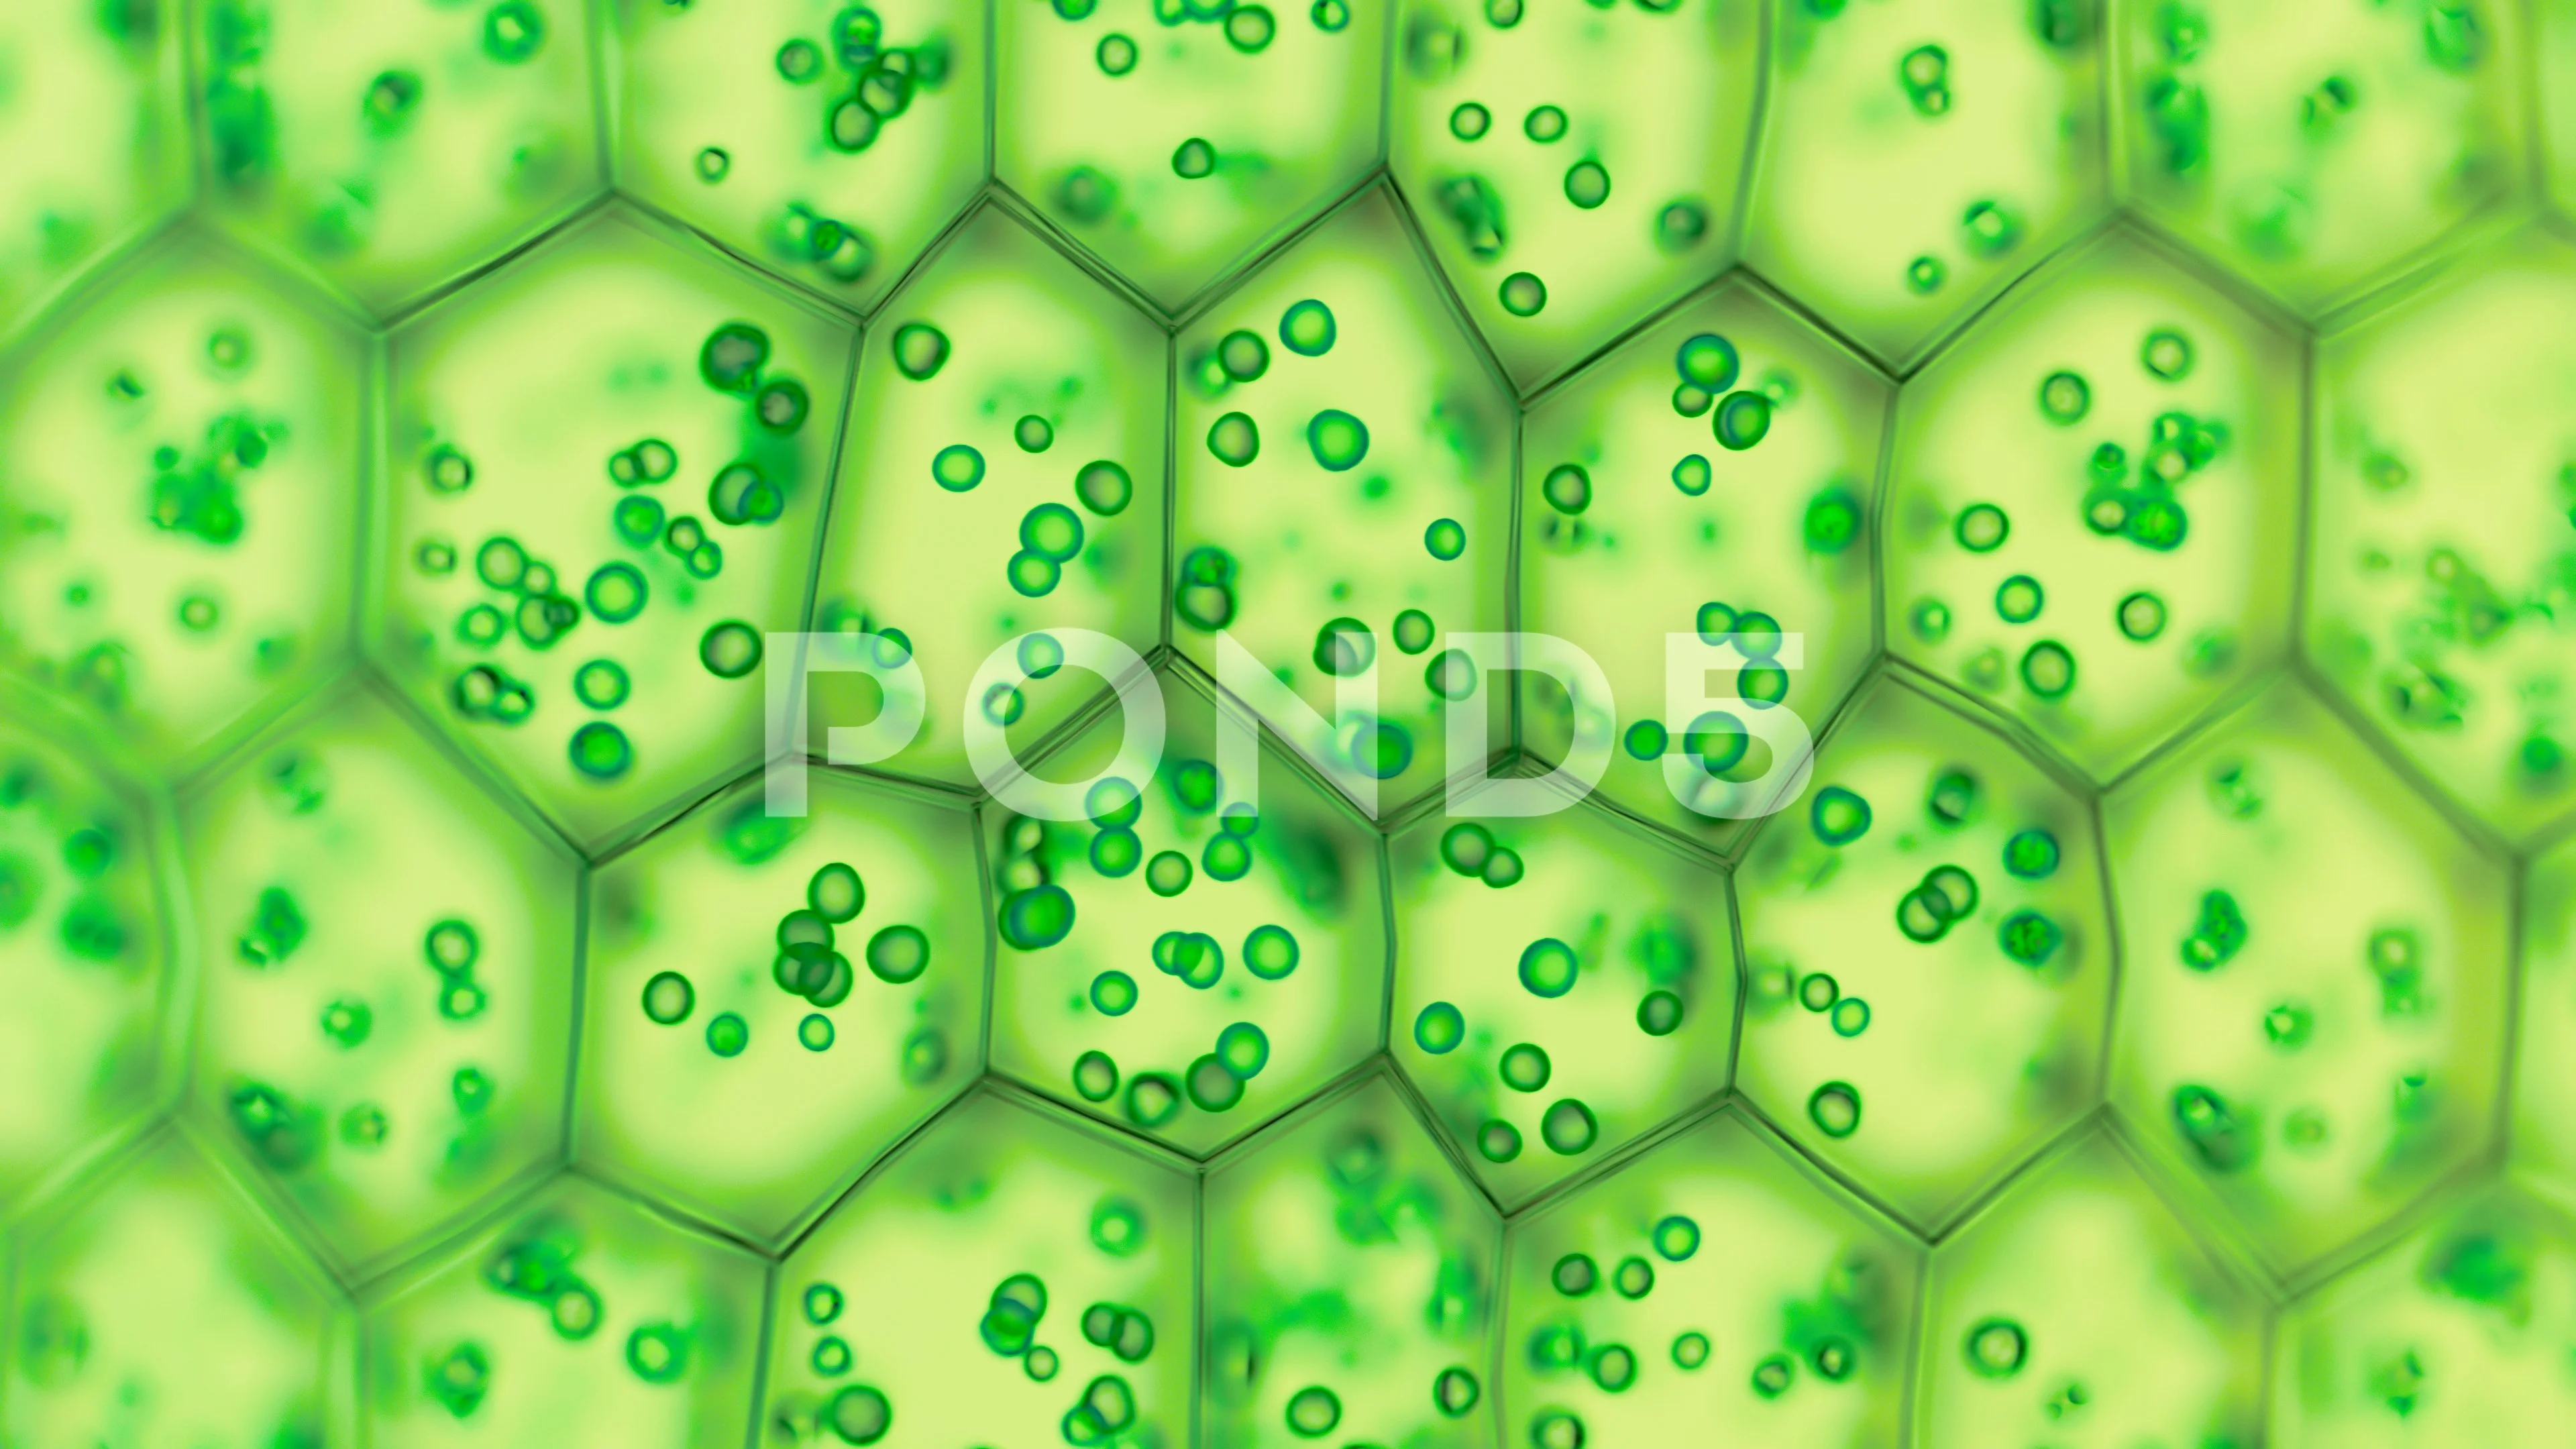 https://images.pond5.com/generic-green-plant-cells-under-footage-126307996_prevstill.jpeg